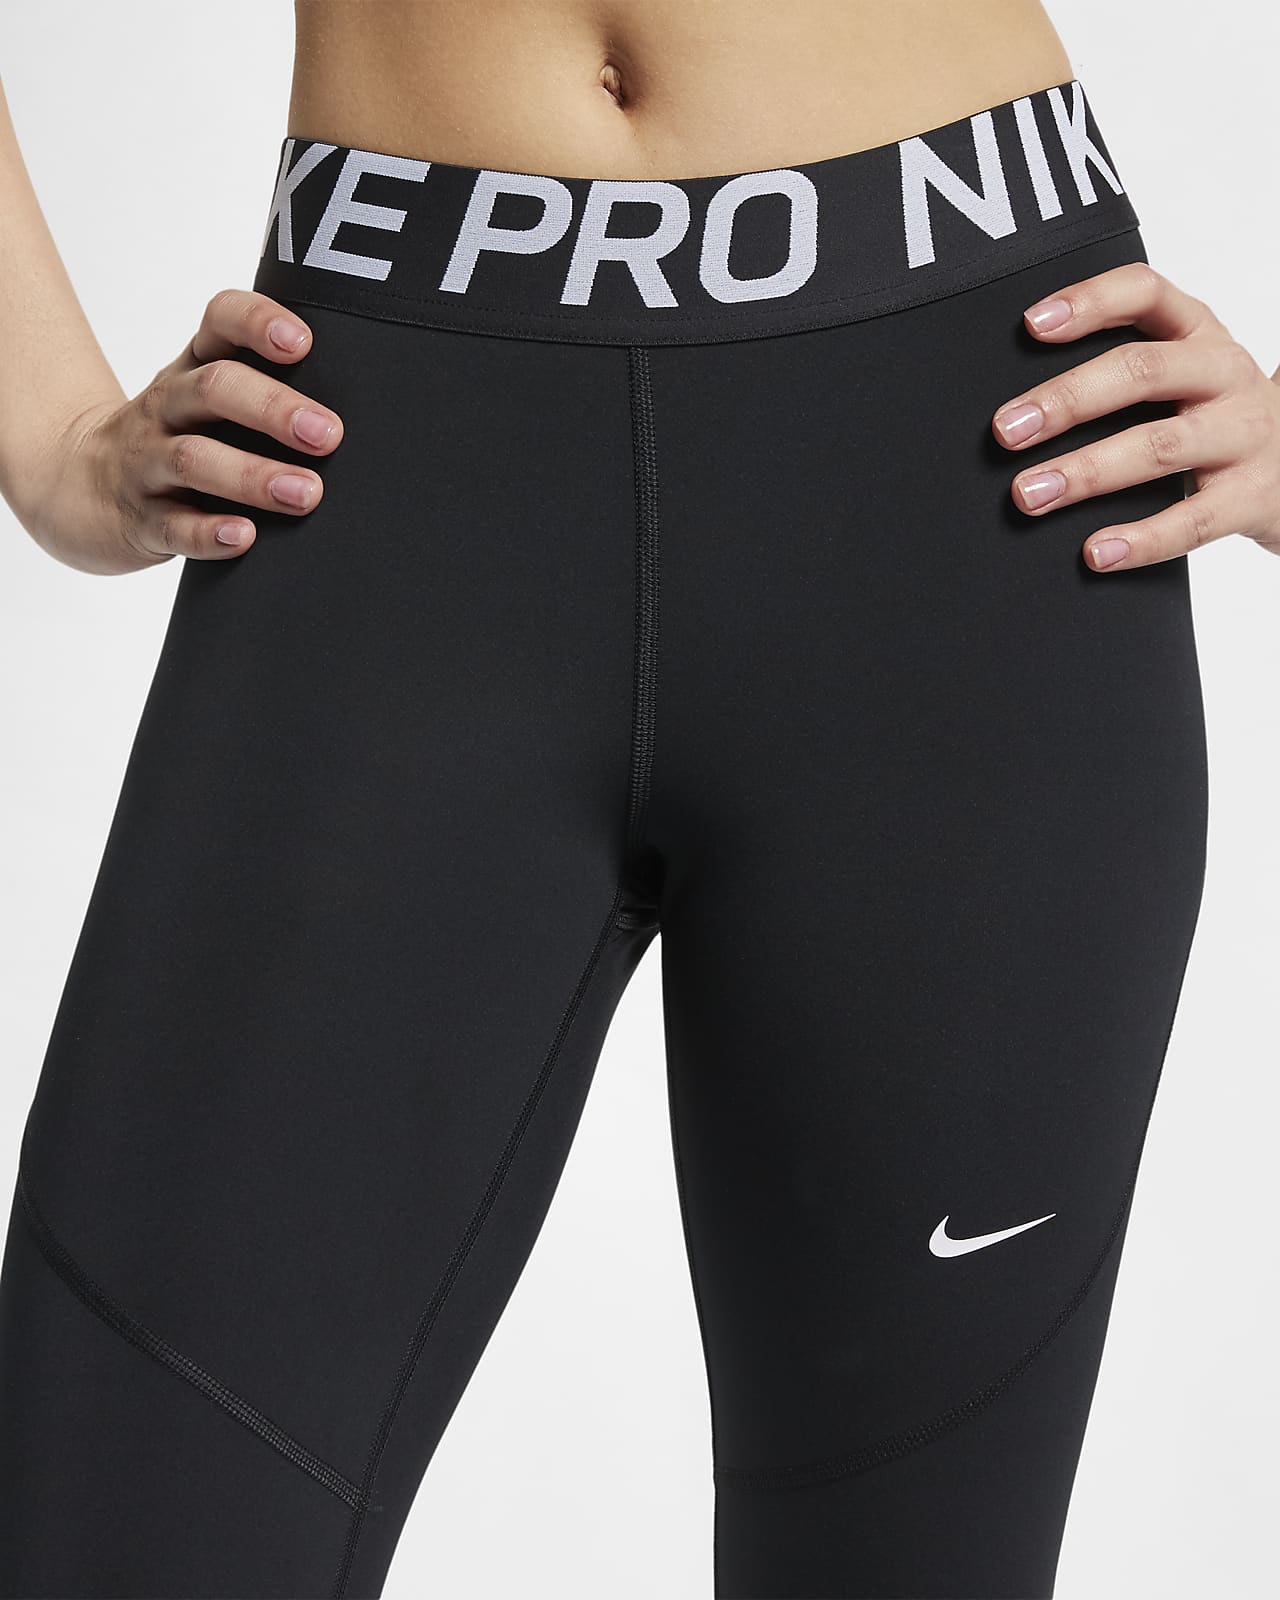 Nike Pro Women's Tights. Nike LU